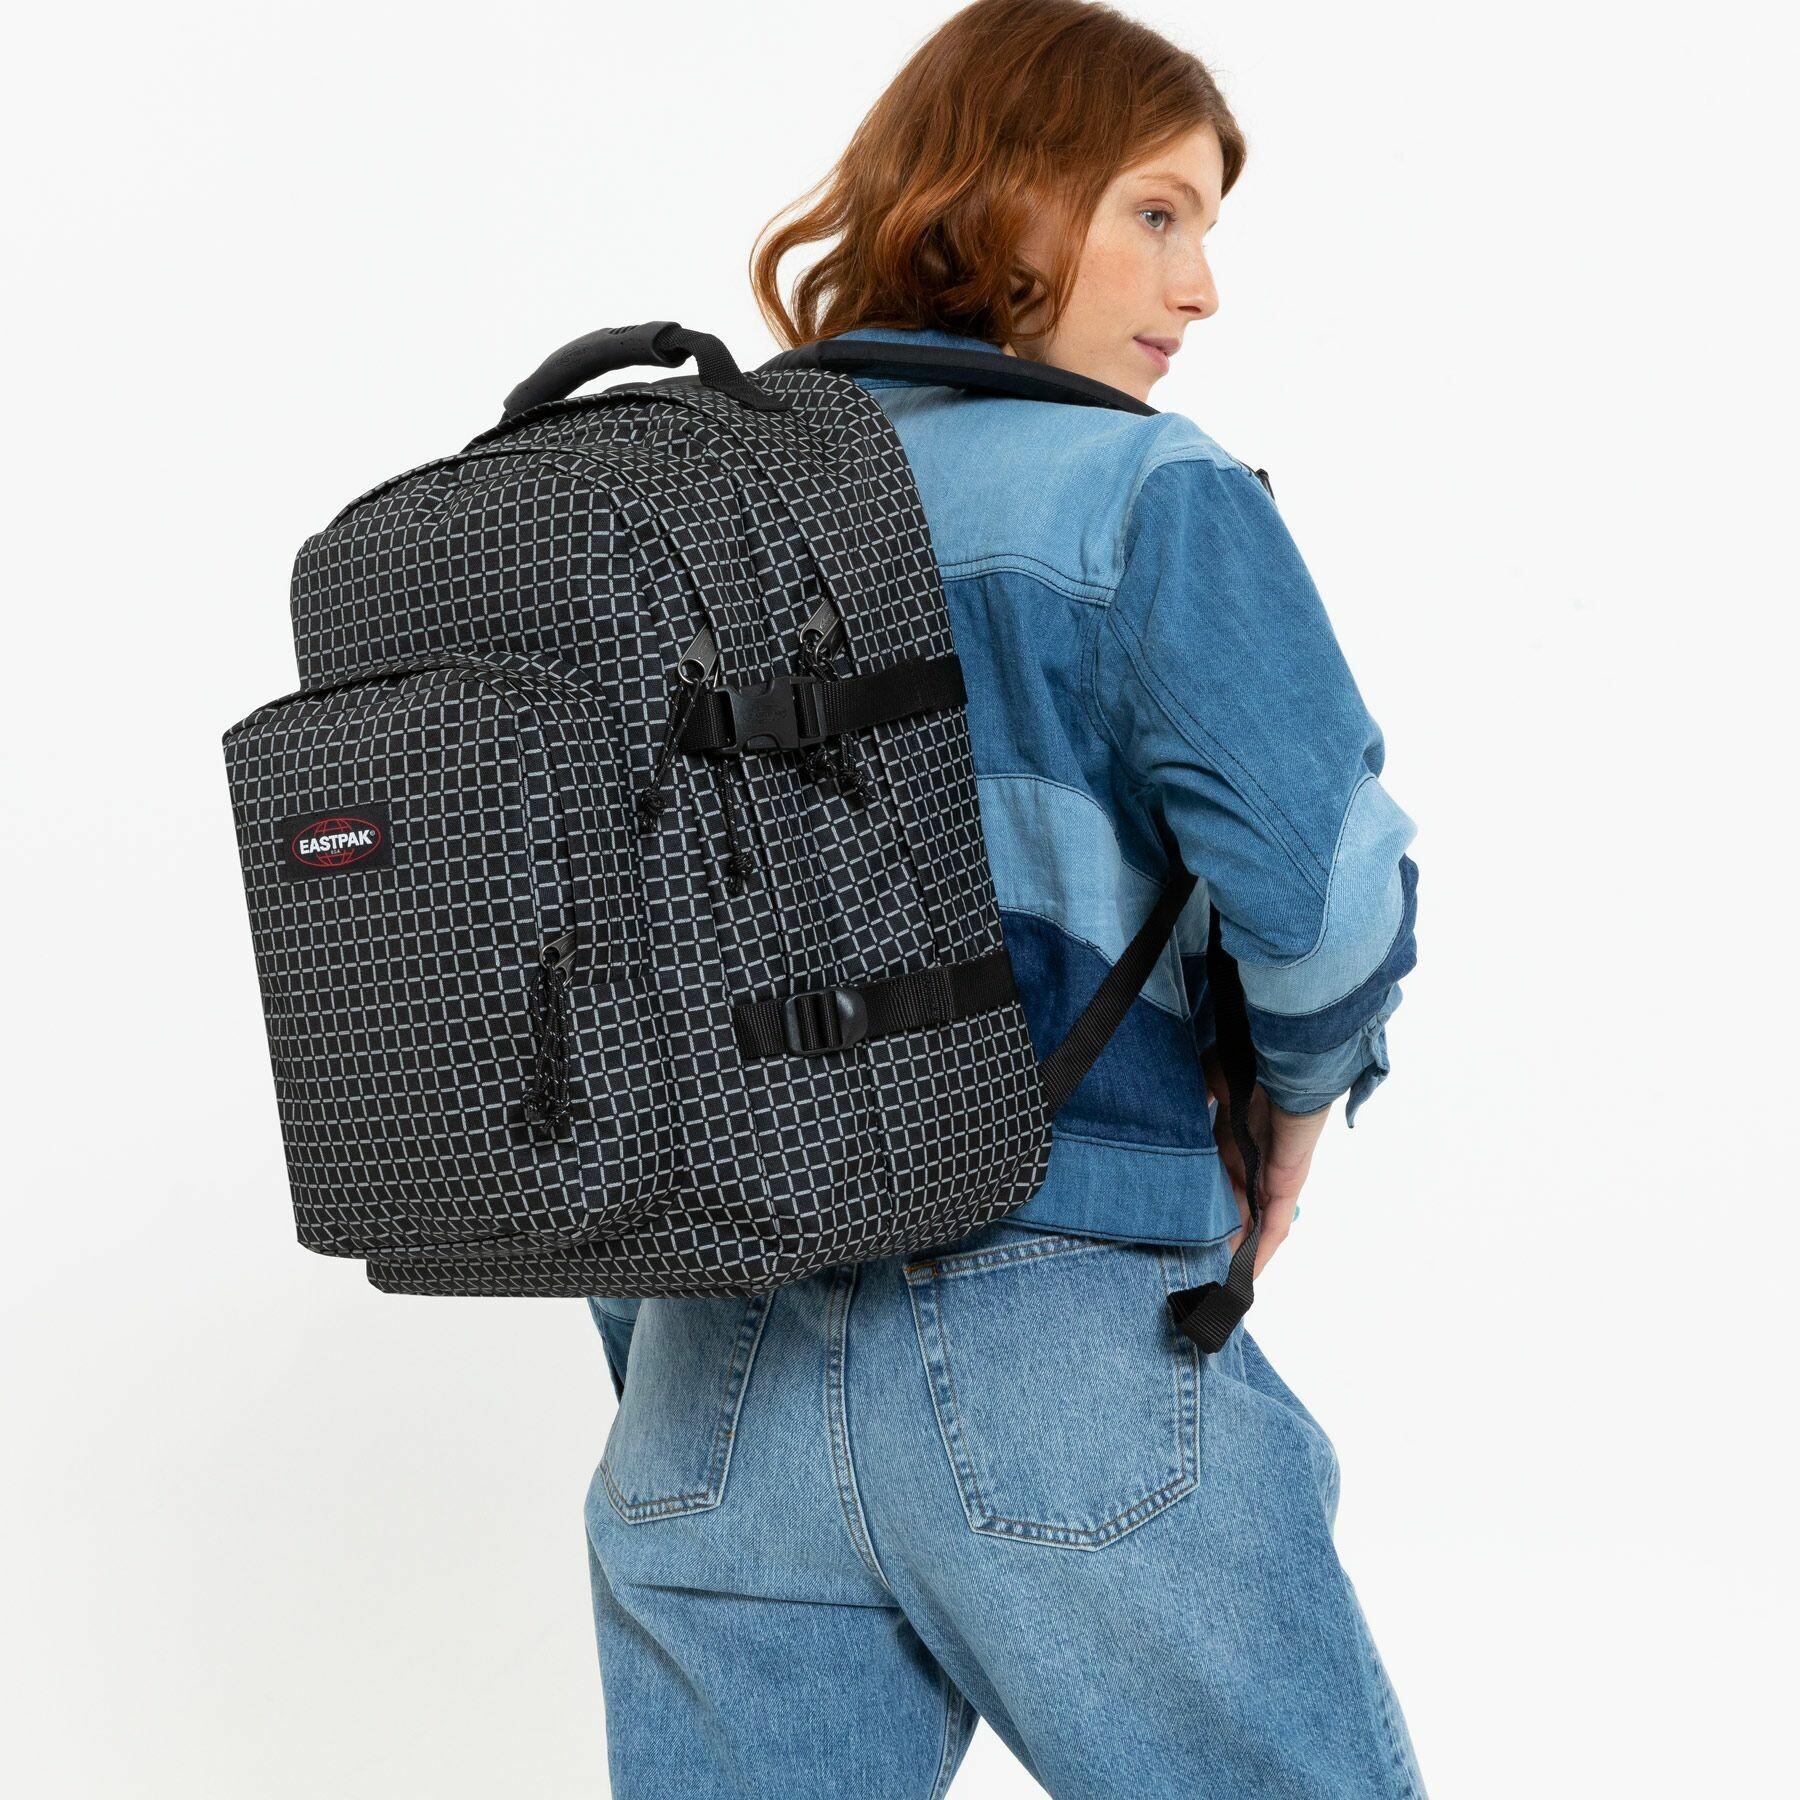 Backpack Eastpak Provider U36 Refleks